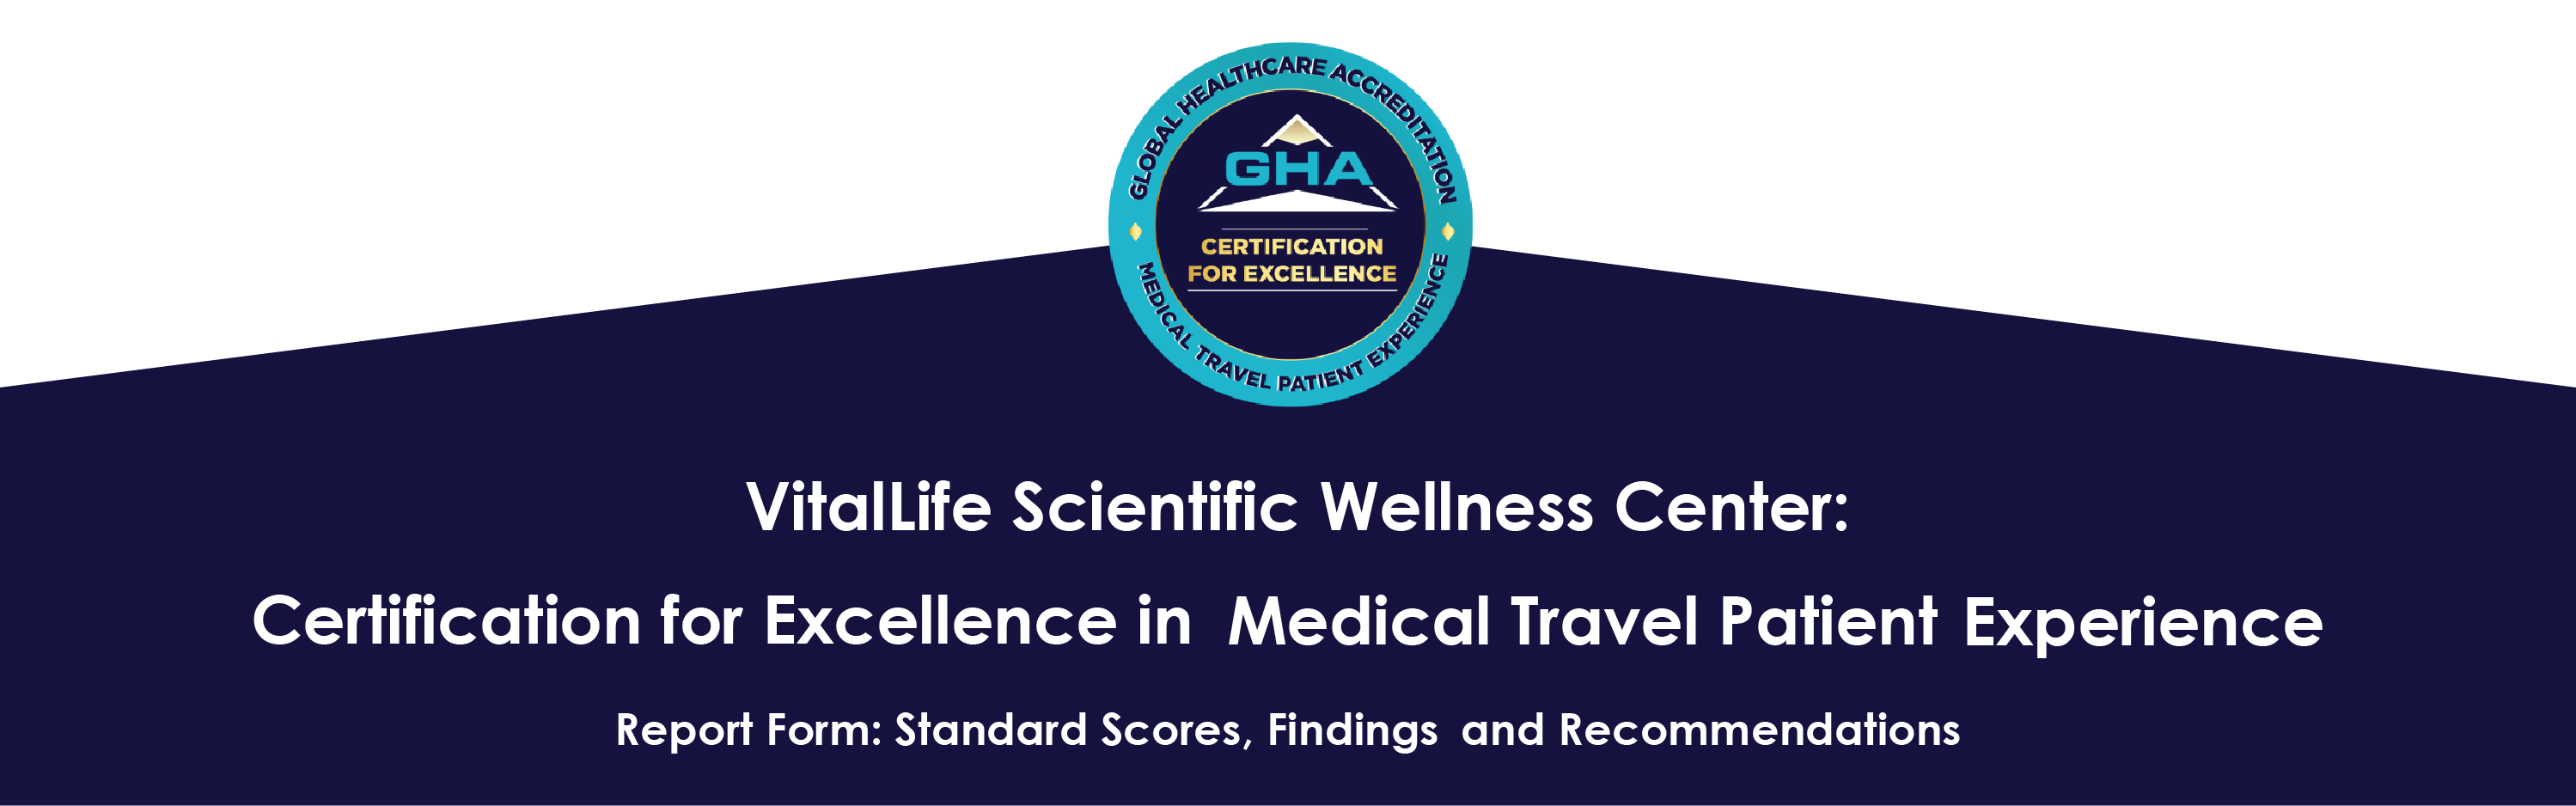 VitalLife đạt được Chứng nhận của GHA về Sự xuất sắc trong Trải nghiệm Bệnh nhân trong Du lịch Y tế